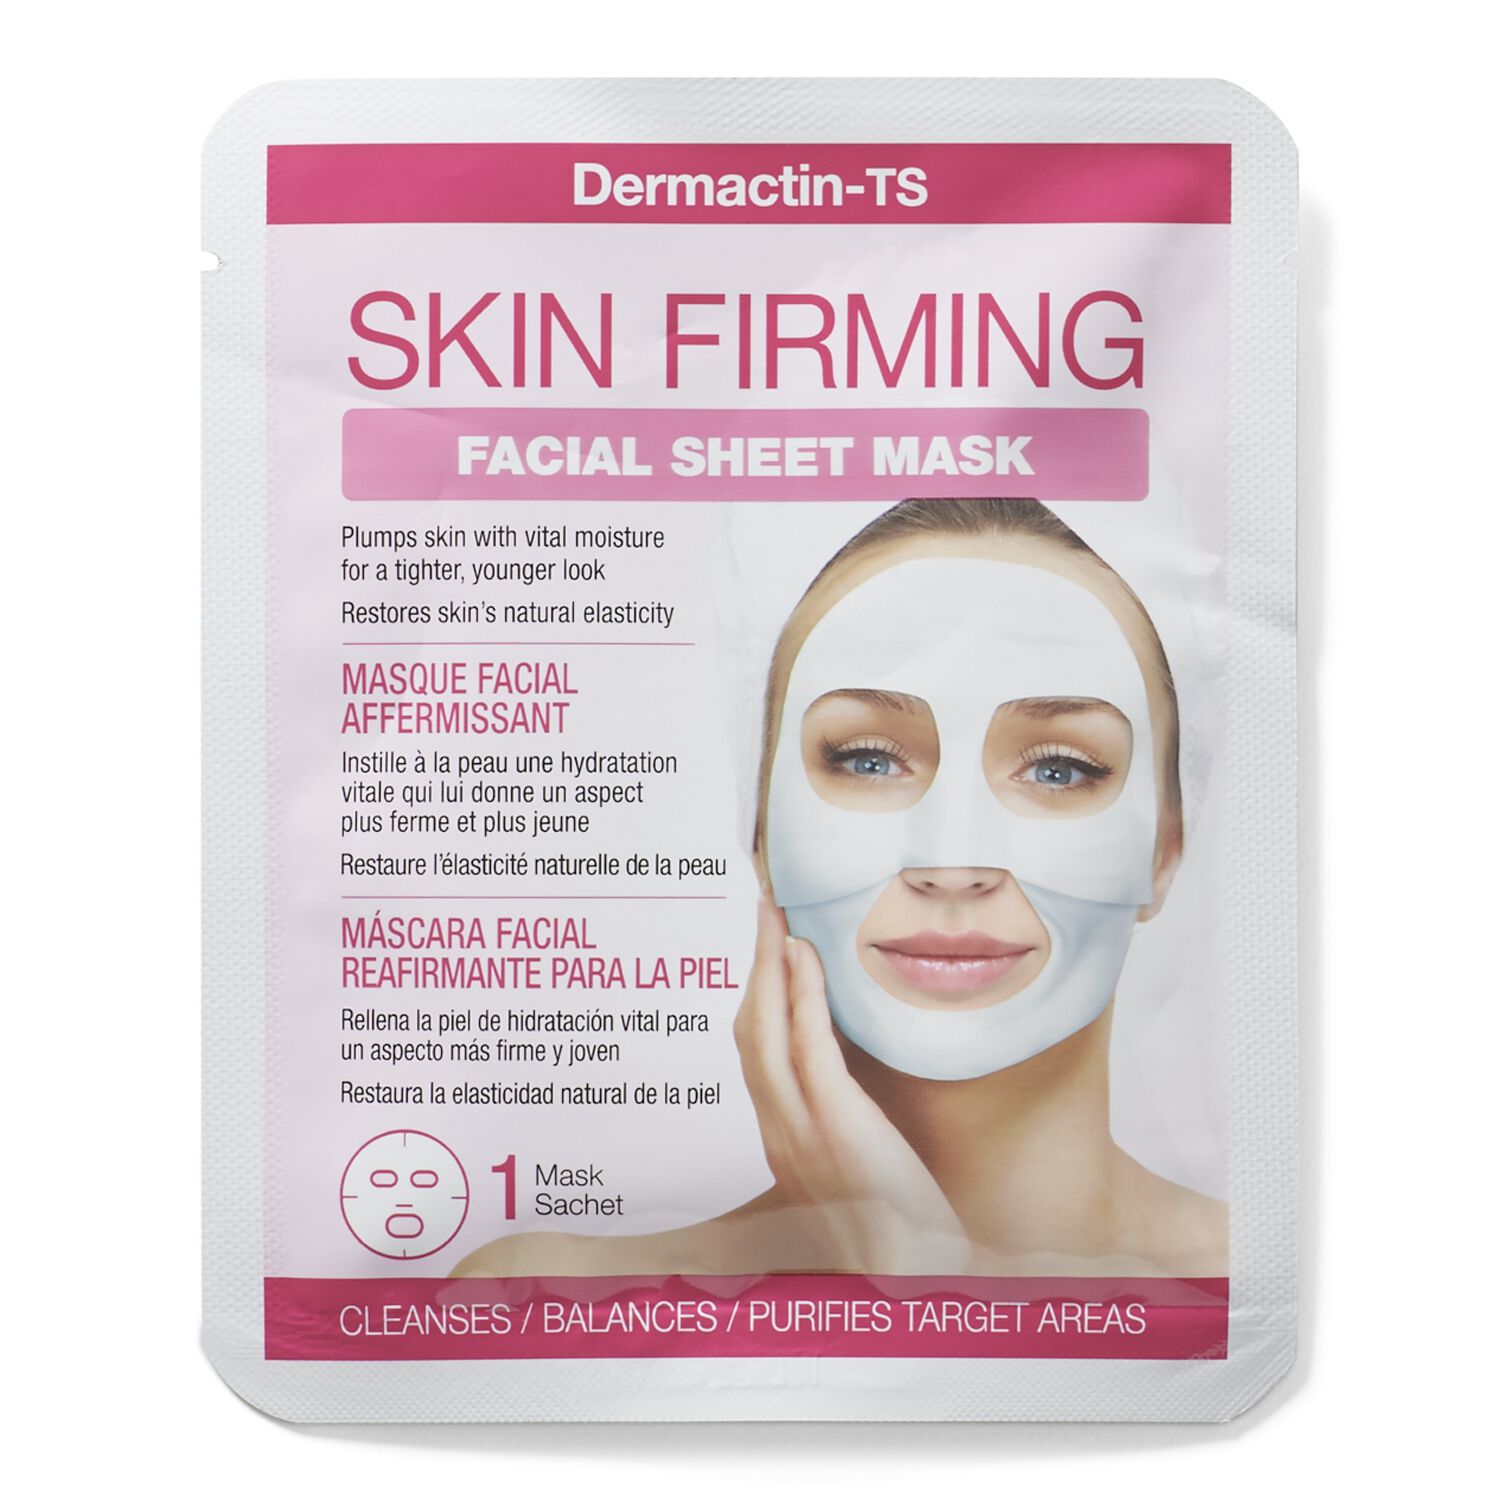 DermactinTS Skin Firming Facial Sheet Mask